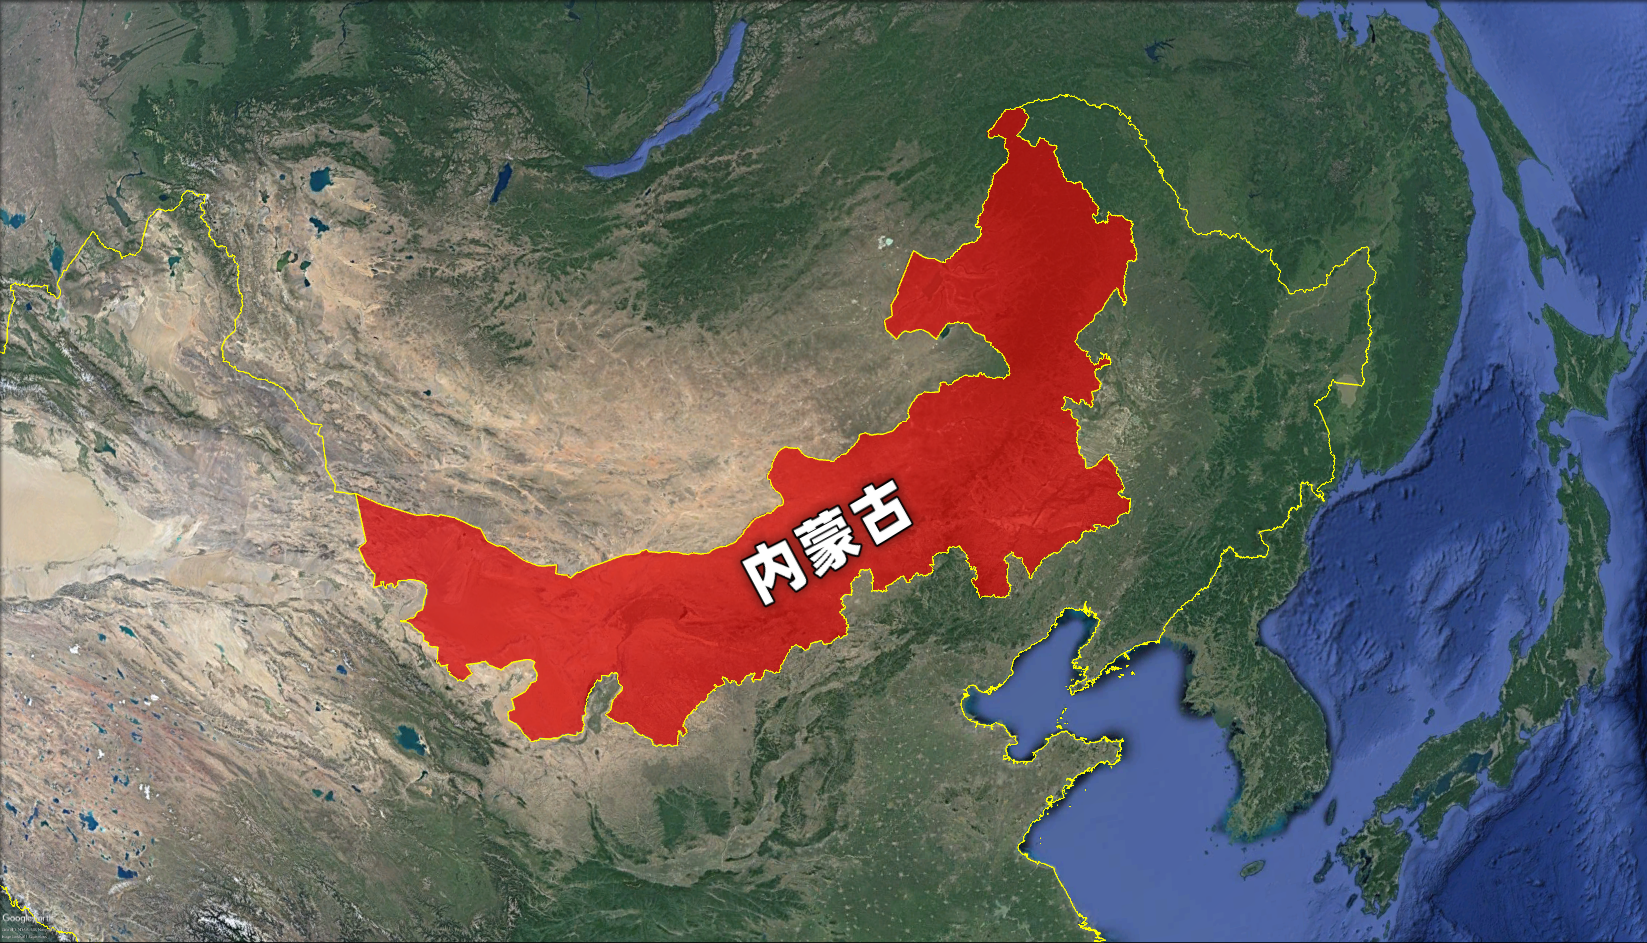 蒙古国和内蒙古差距有多大？资源都很丰富，为何发展却大不相同？